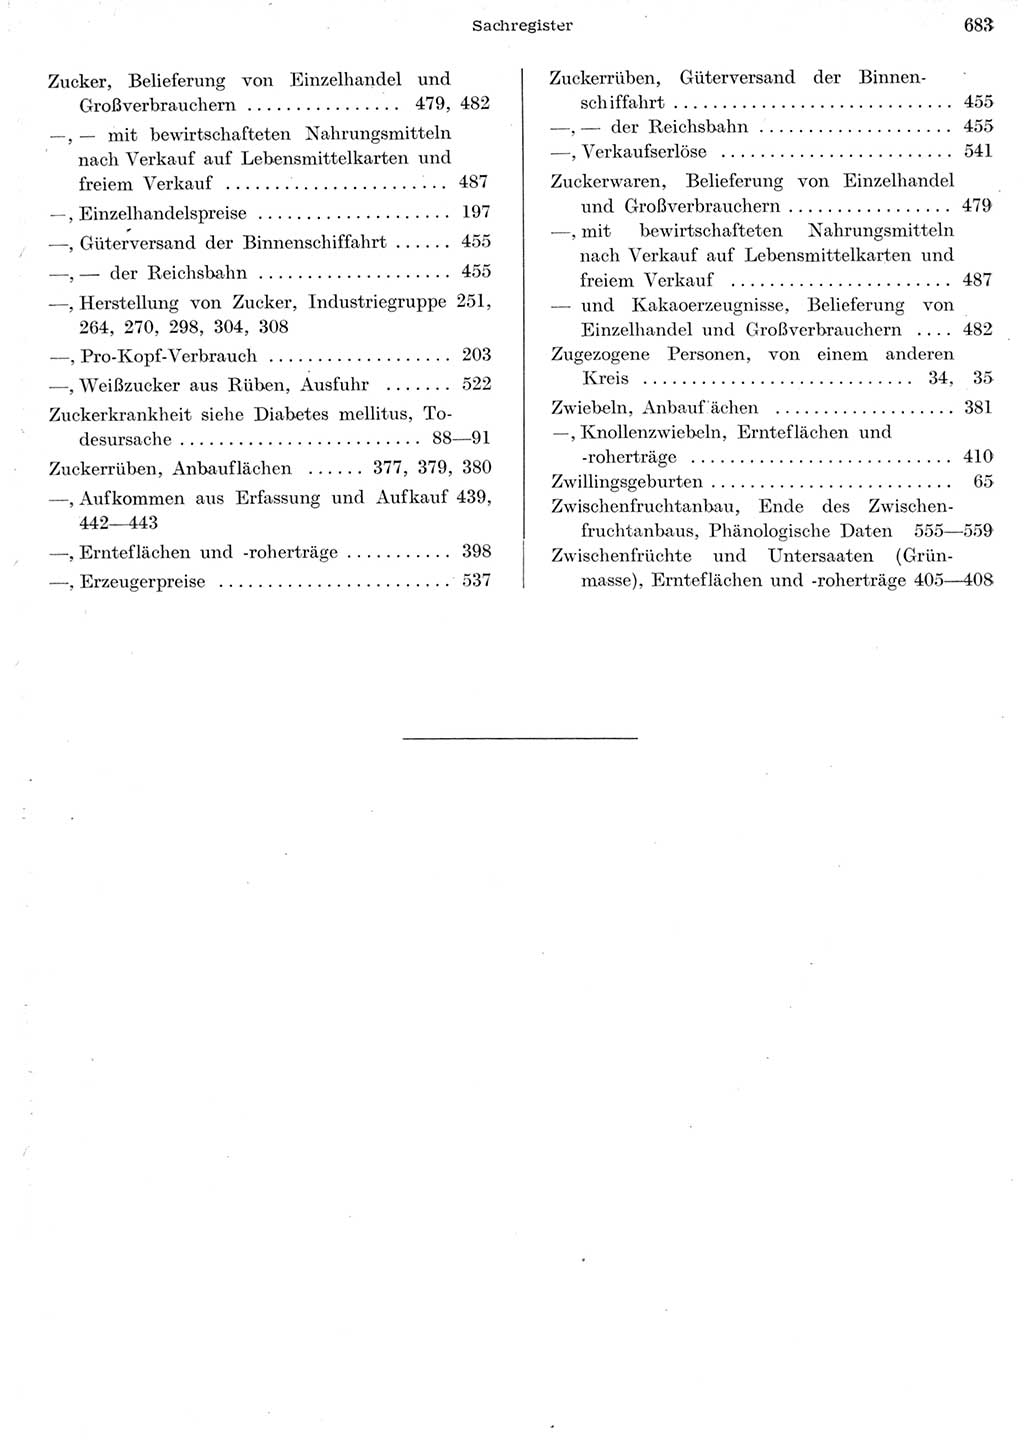 Statistisches Jahrbuch der Deutschen Demokratischen Republik (DDR) 1956, Seite 683 (Stat. Jb. DDR 1956, S. 683)